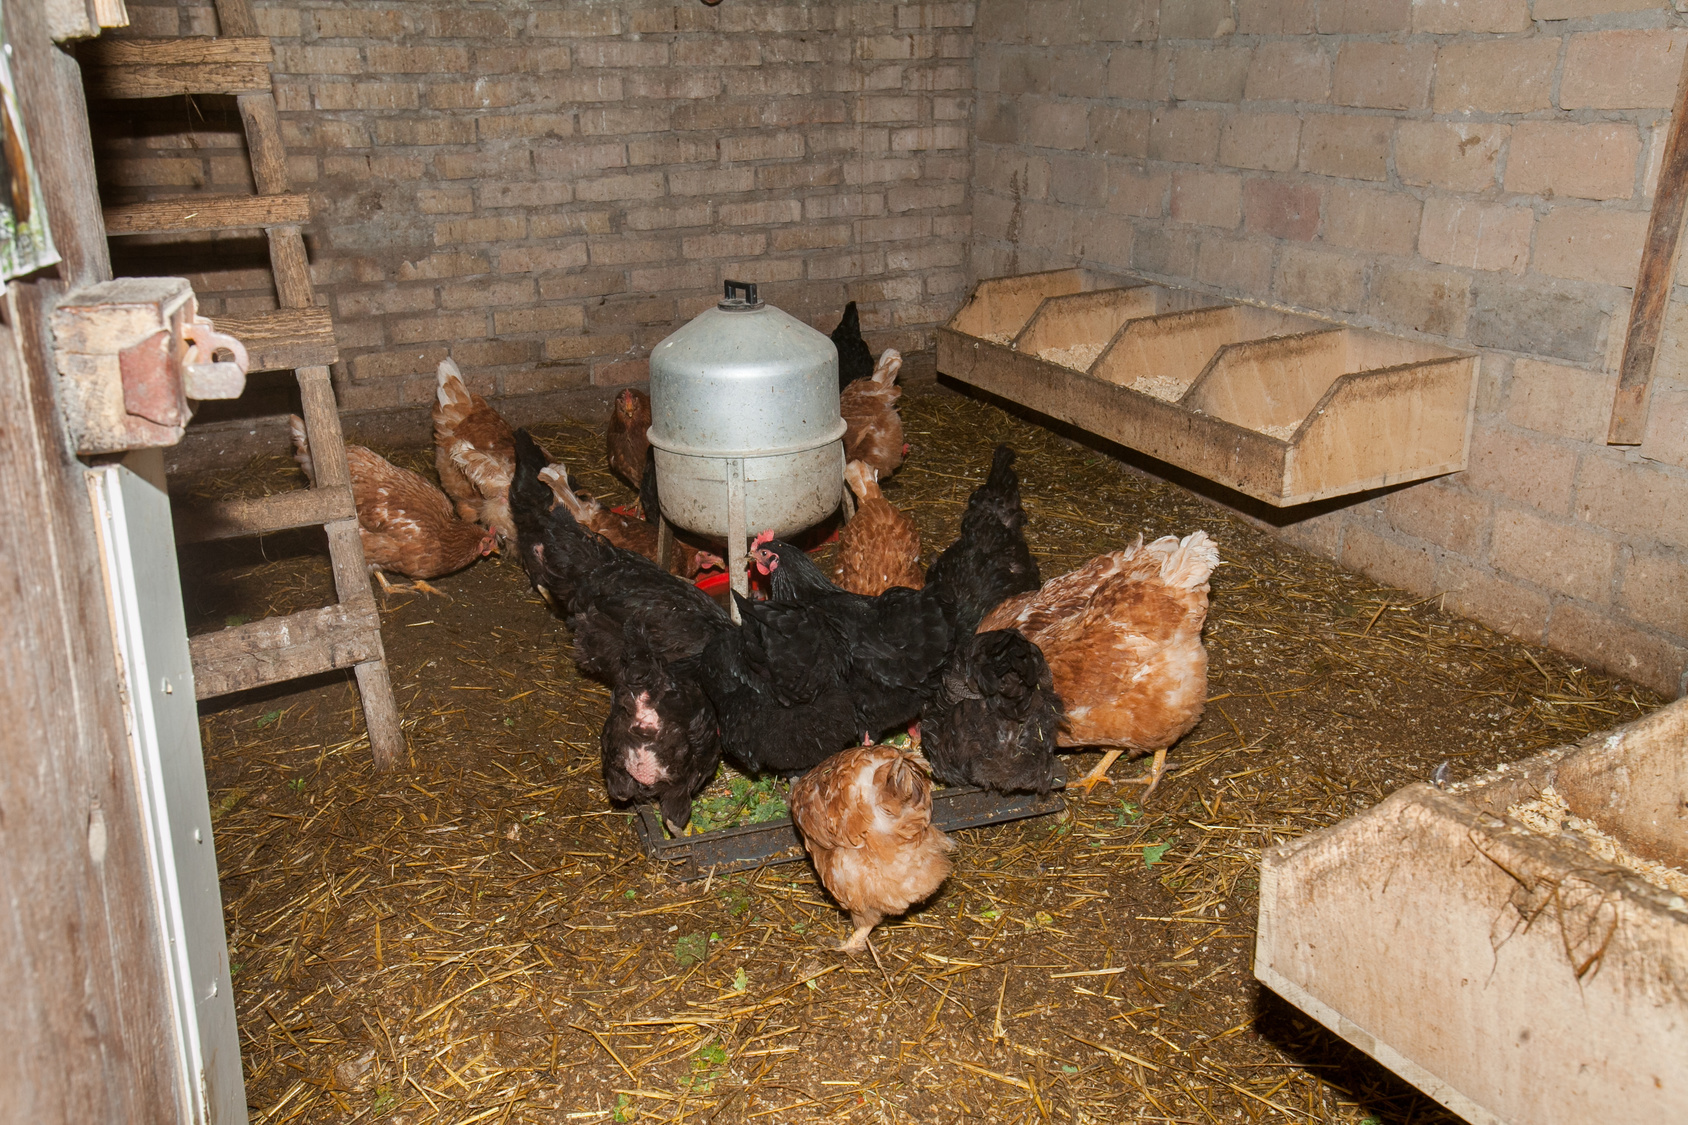 Постельные принадлежности в курятнике - приложение   Постельные принадлежности используются для производства различных видов домашней птицы, включая цыплят-бройлеров, выращивания кур-несушек и мясных цыплят, а также для птичьих стай, производящих яйца для вылупления и потребления в экологически известном фермерском хозяйстве, а также в птицеводстве, выращивании уток и гусей